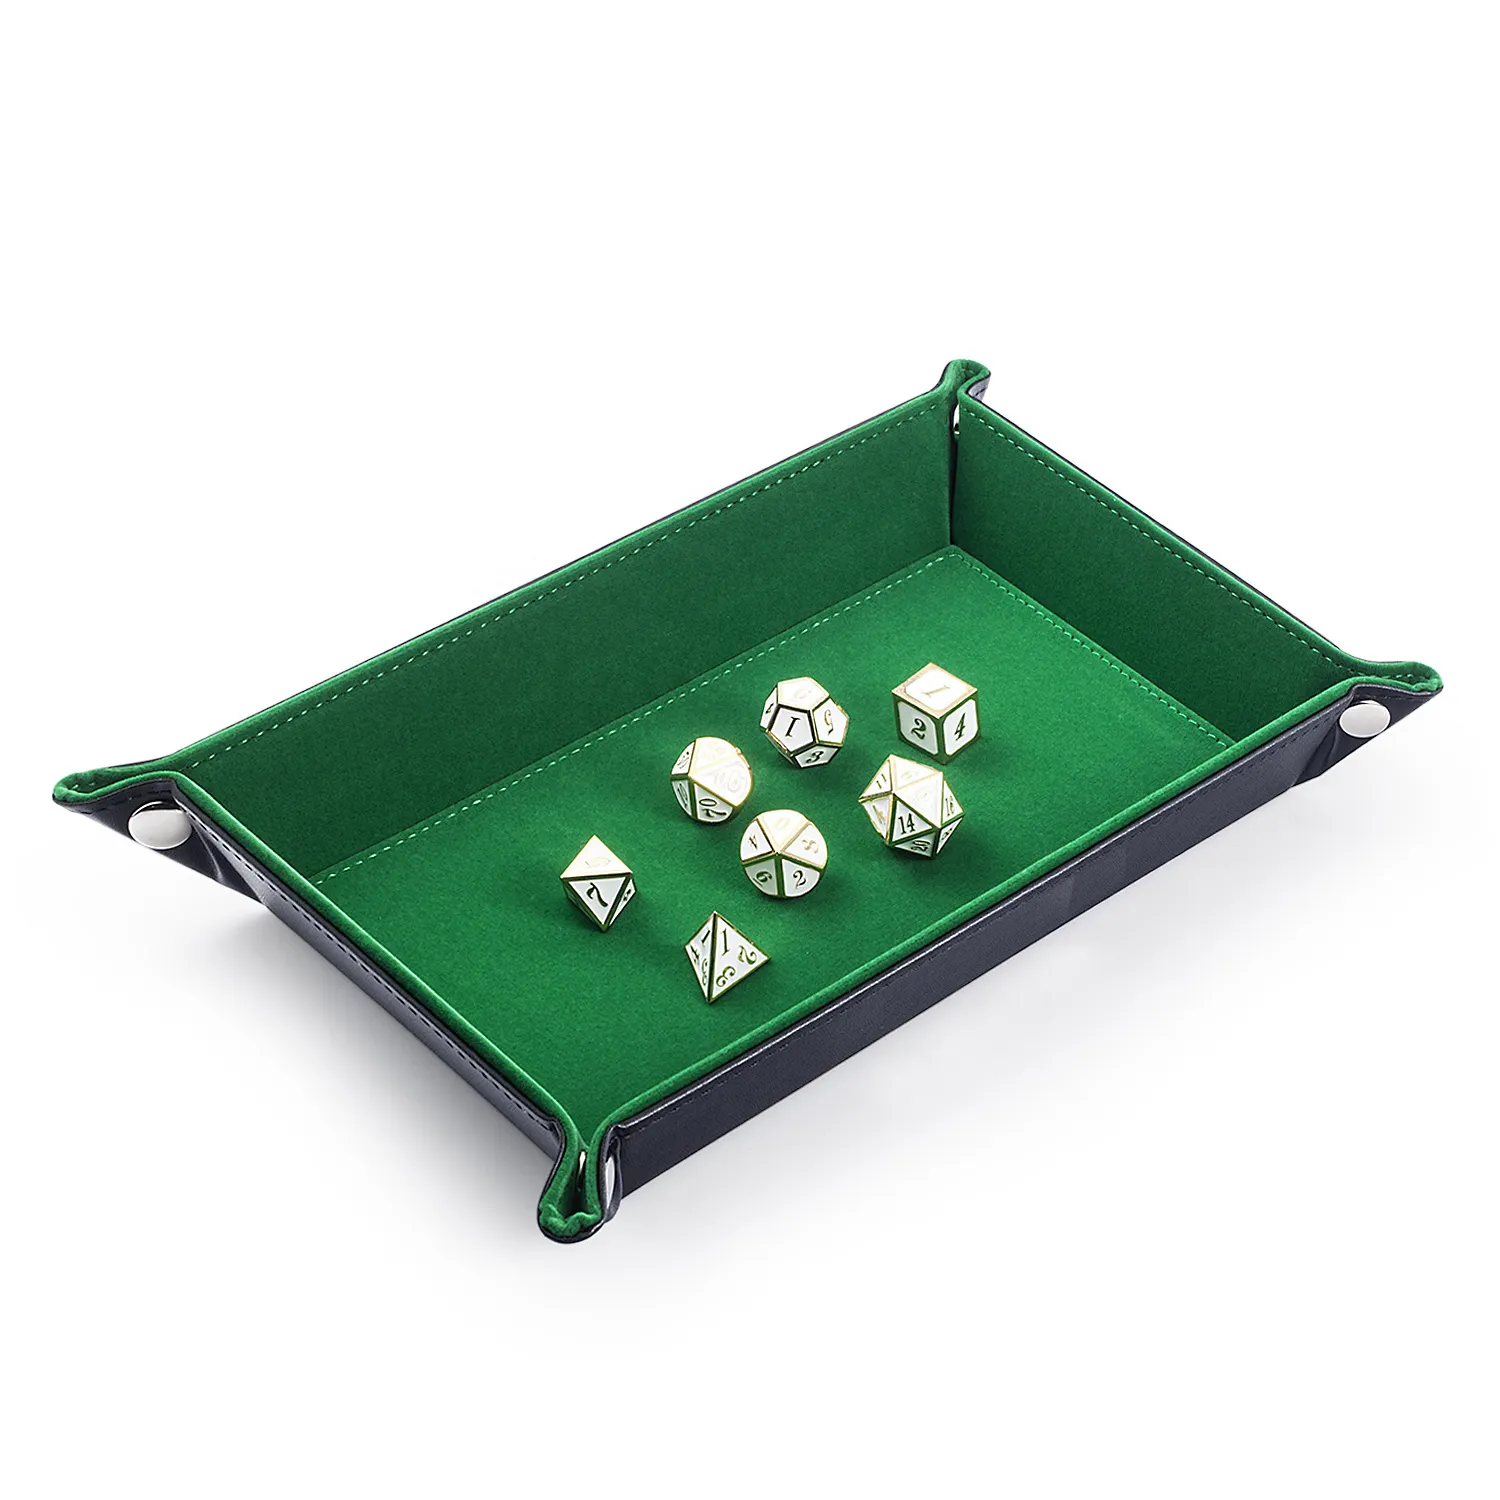 Bandeja rodante de dados personalizada de cuero PU, bandeja de dados rectangular plegable para juegos de mesa DND, venta al por mayor